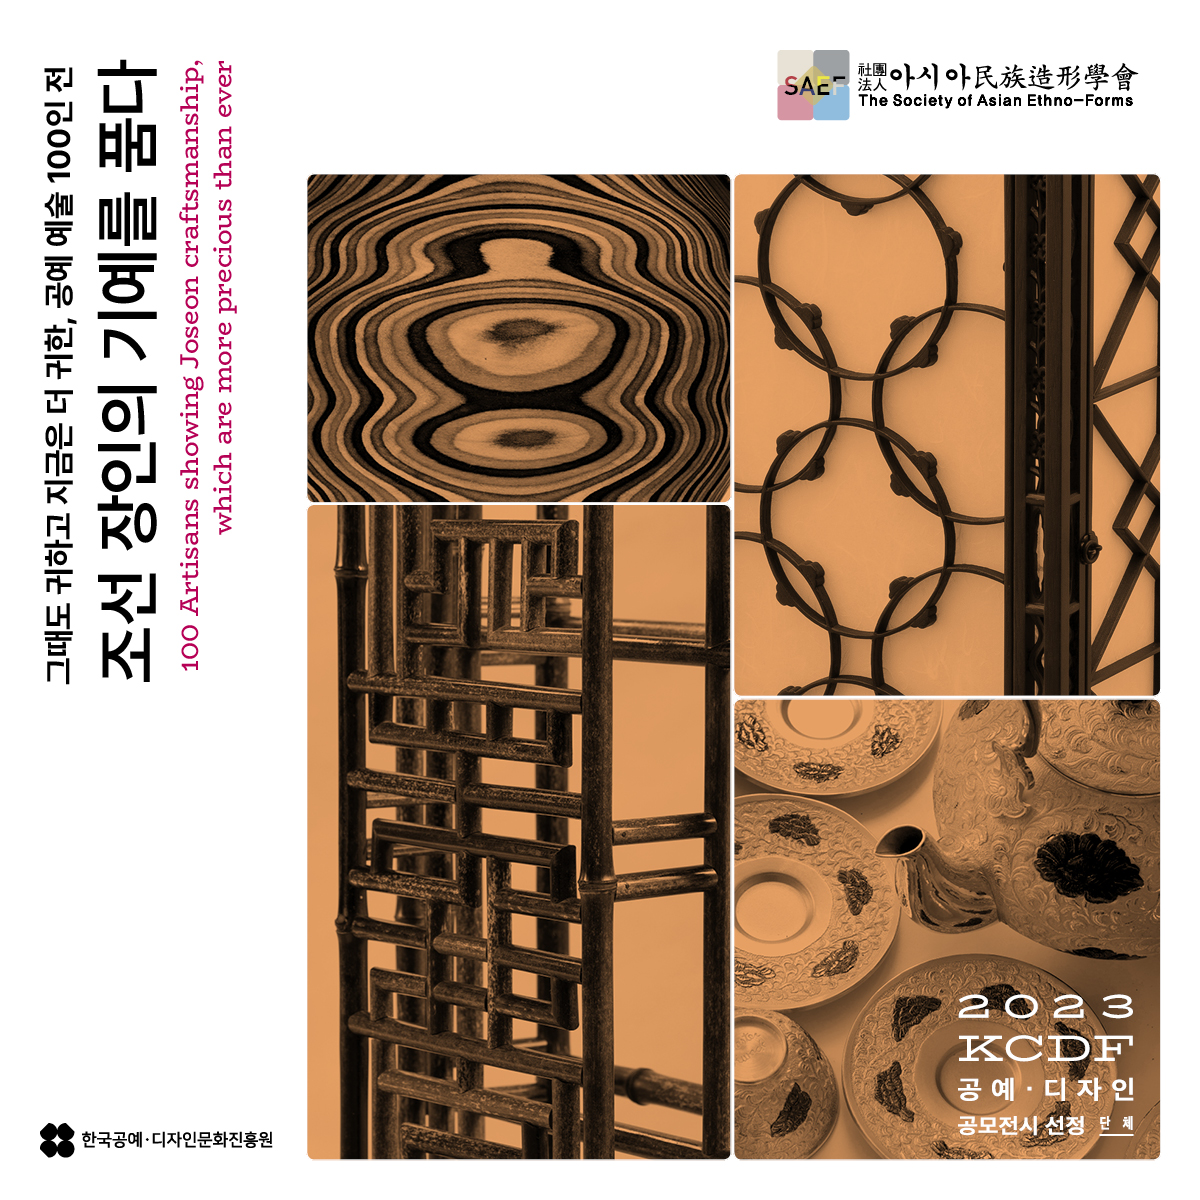 아시아(The Society of Asian Ethno-Forms) 그때도 귀하고 지금은 더 귀한, 공예 예술 100인 전 조선 장인의 기예를 품다(100 Artisans showing Joseon craftsmanship, which are more precious than ever) 2023 KCDF 공예·디자인 공모전시 선정 - 단체 - 한국공예·디자인문화진흥원